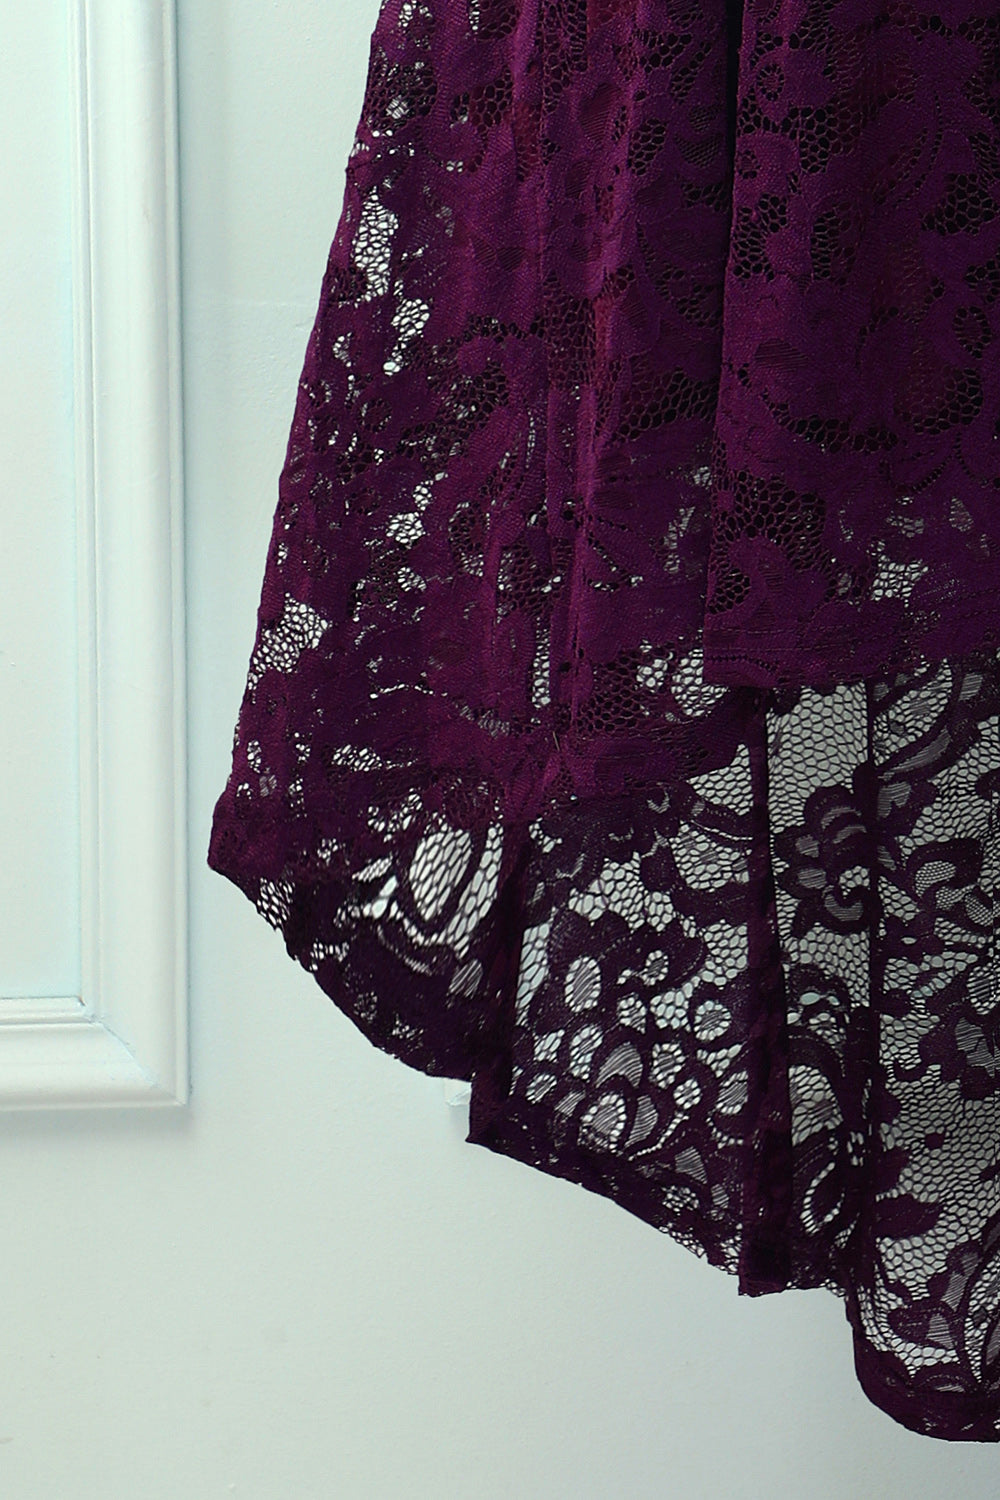 Asymmetrical Grape Lace Dress